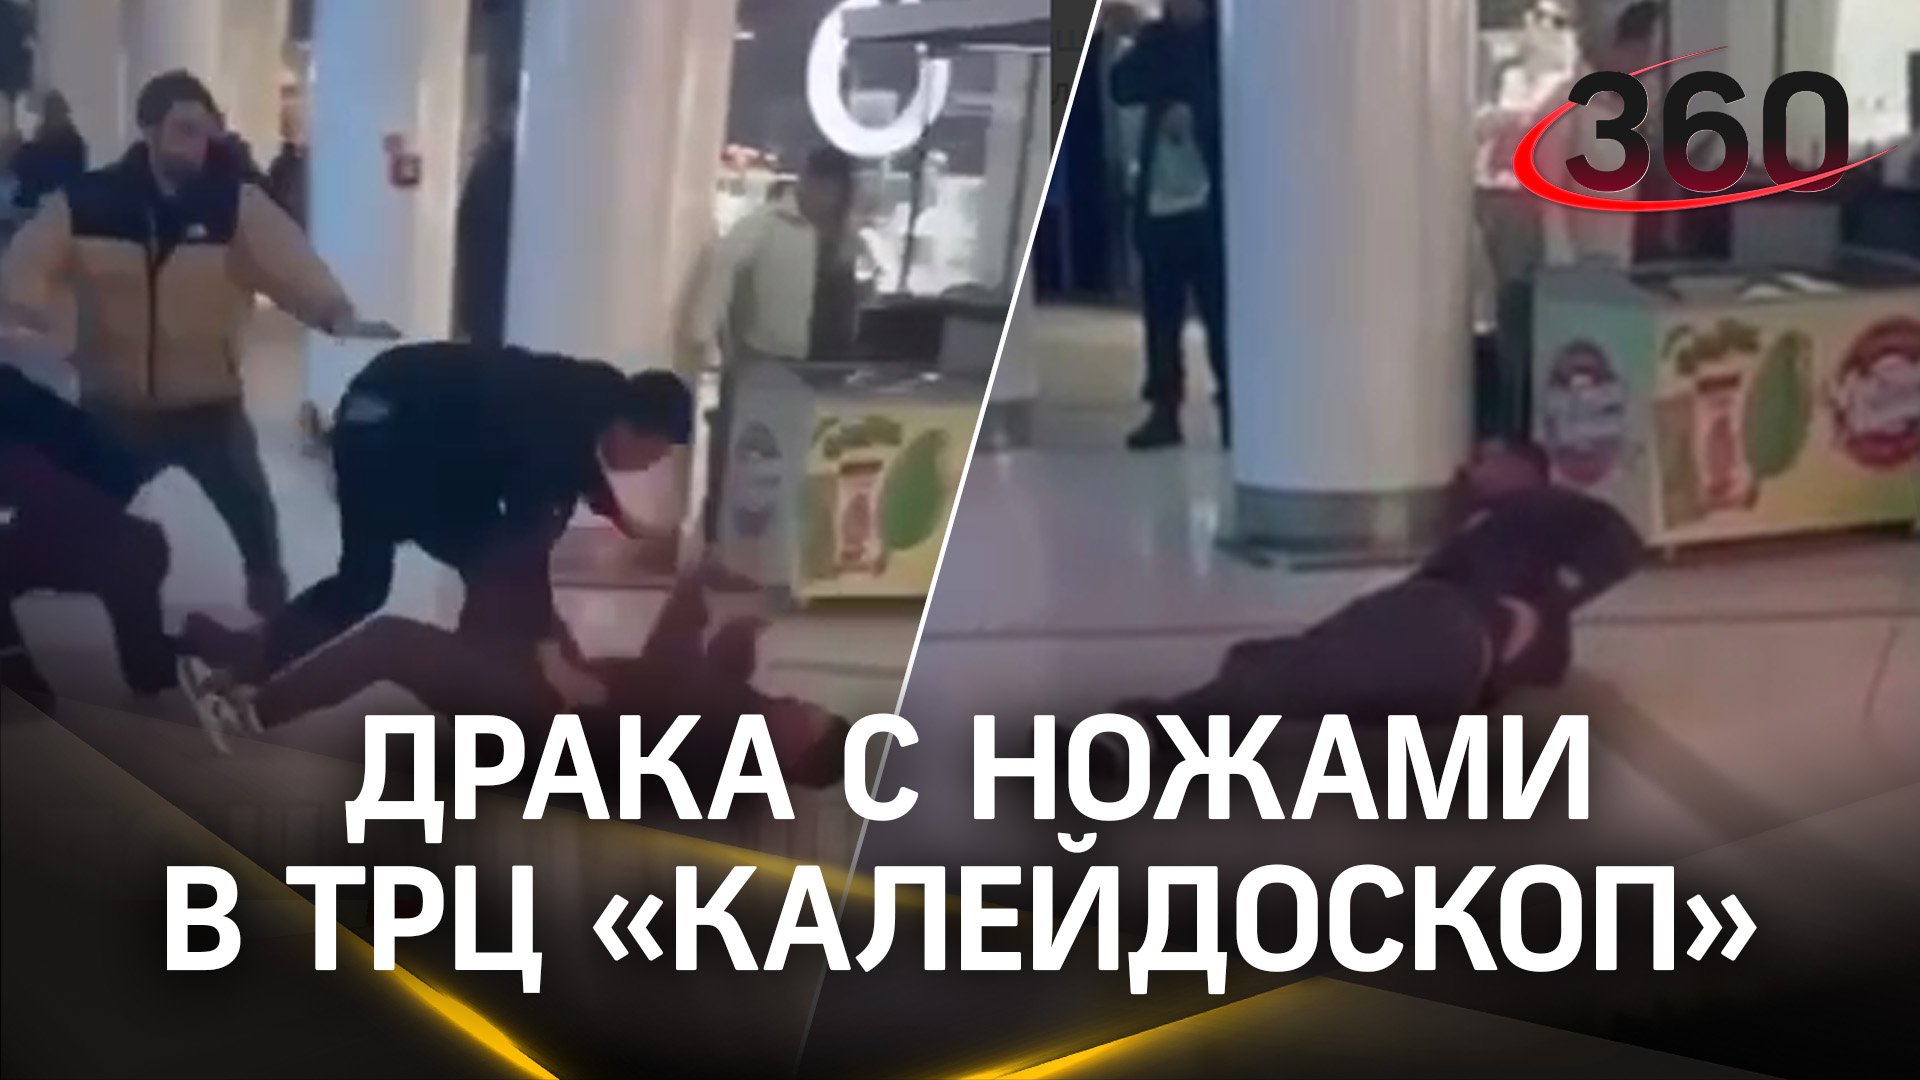 От слов до поножовщины за пару секунд: драка охранников и посетителей в ТЦ Москвы